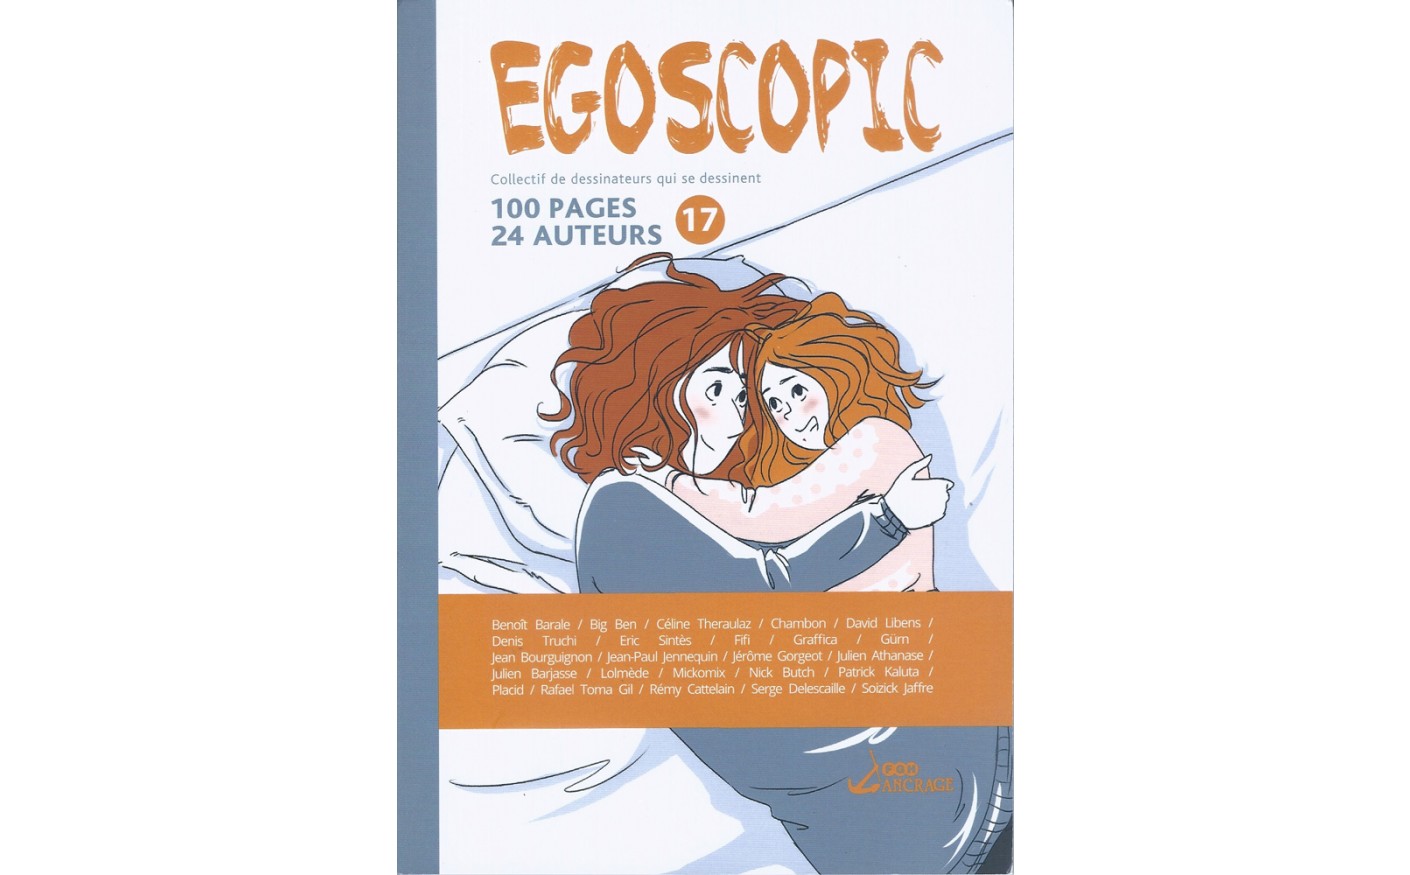 EGOSCOPIC 17